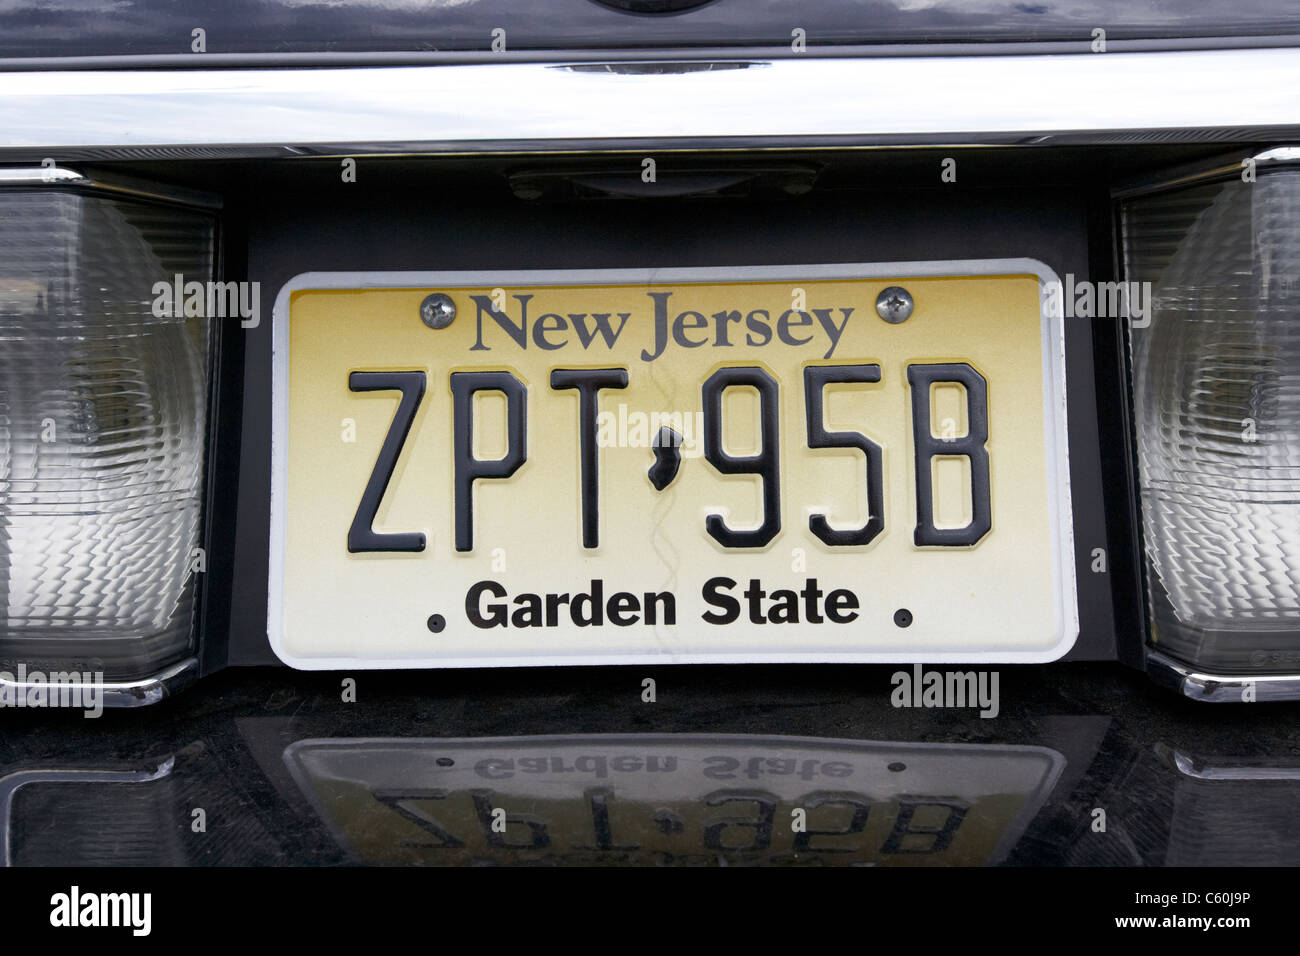 New Jersey Garden State veicolo piastra licenza di stato USA Foto Stock